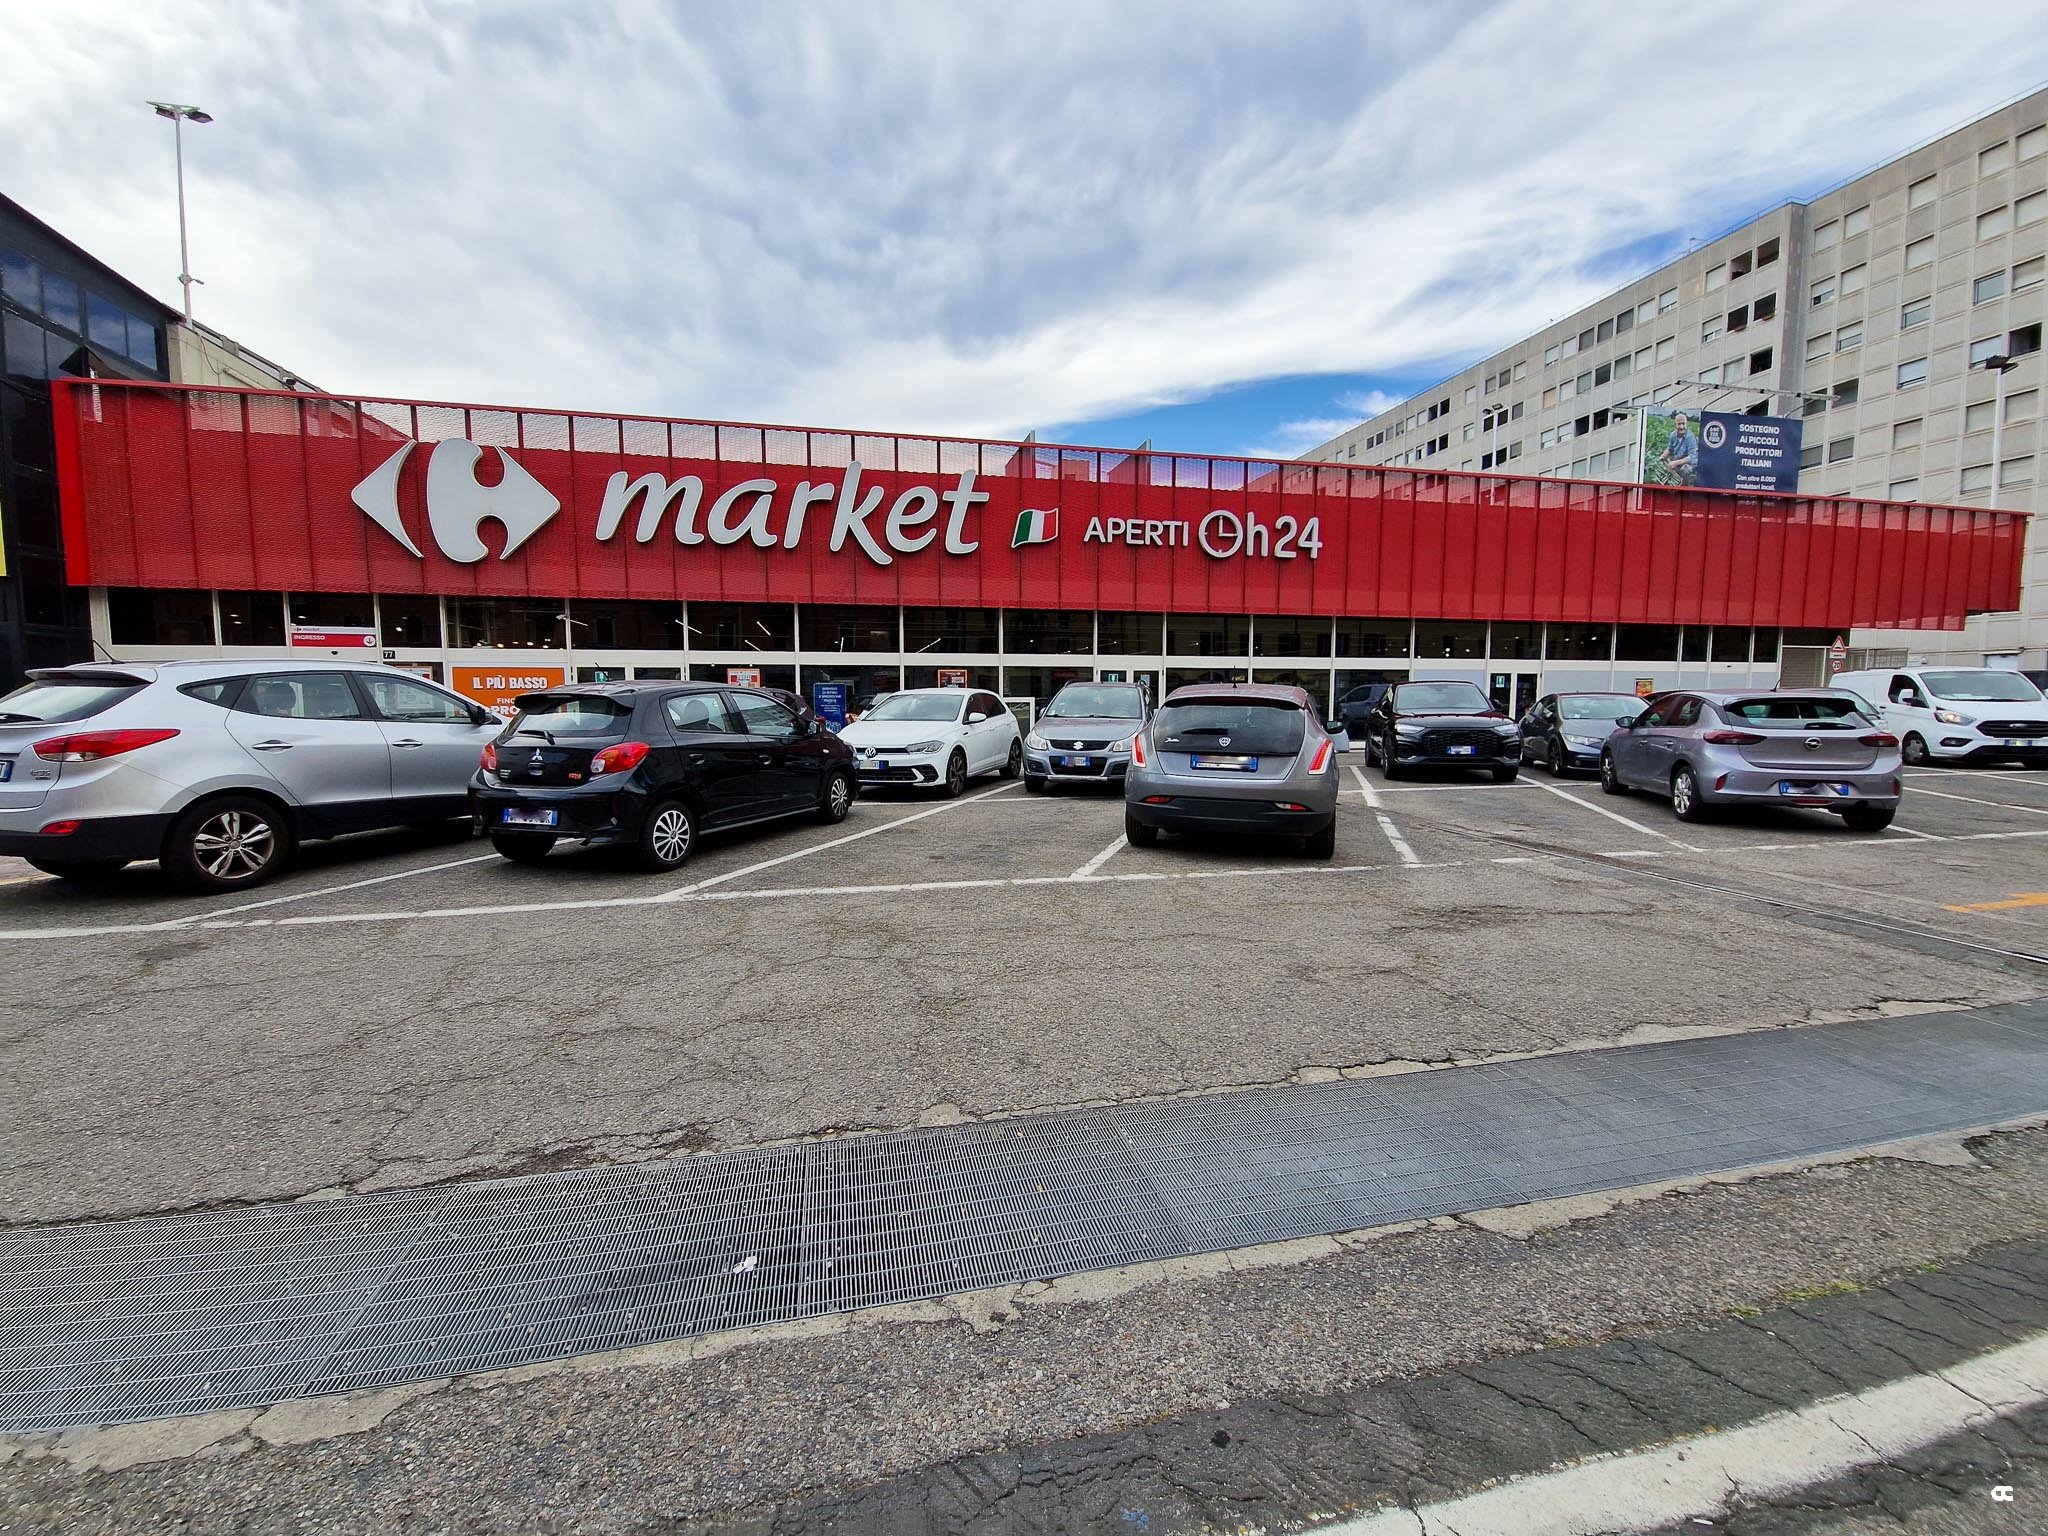 Carrefour - format Market Attrazione - via Farini, Milano - MI